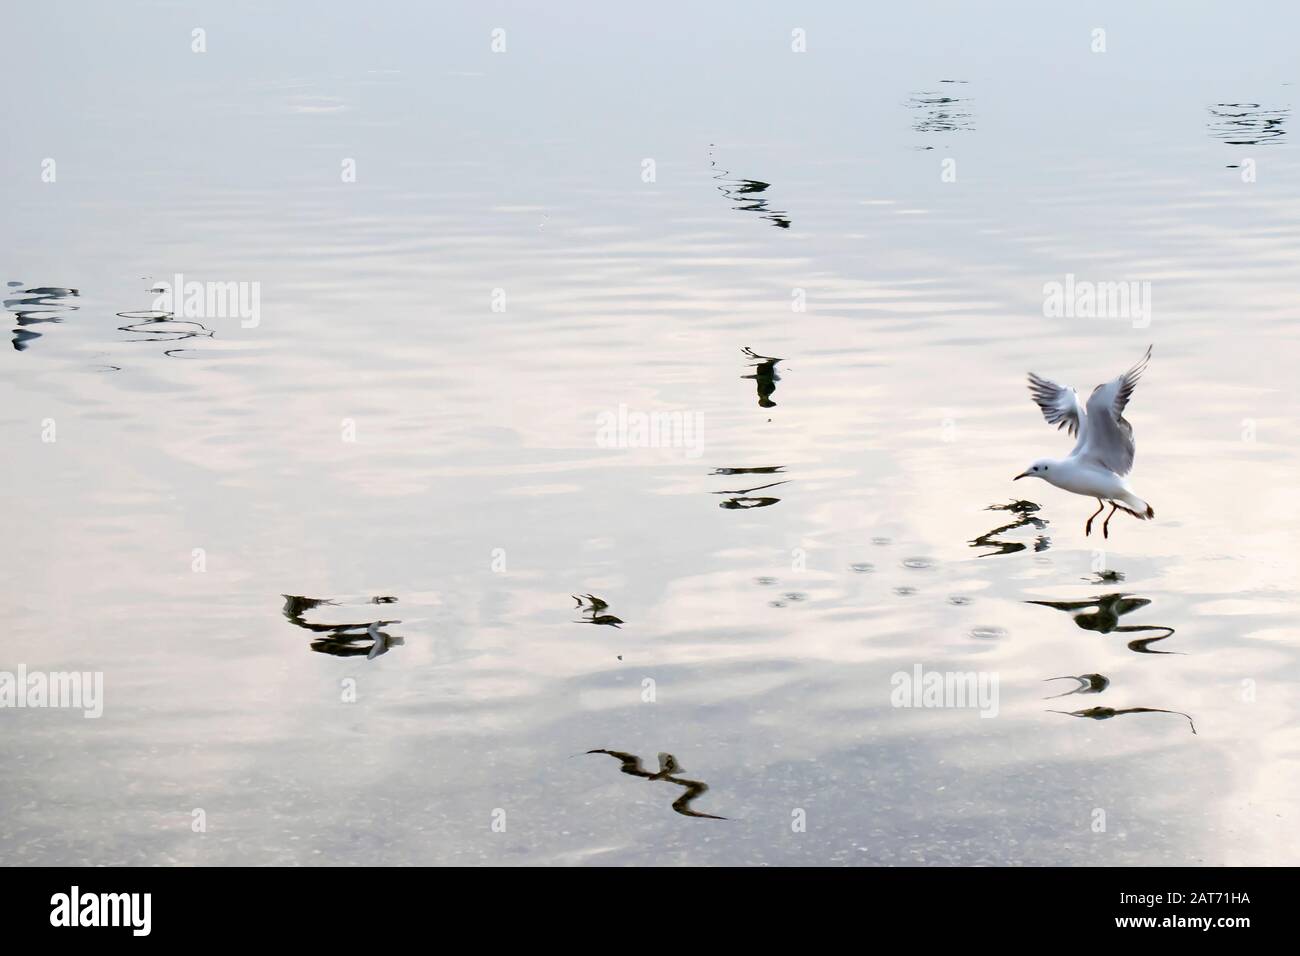 Un gabbiano che vola sopra il fiume e riflesso di altri uccelli sulla superficie dell'acqua Foto Stock